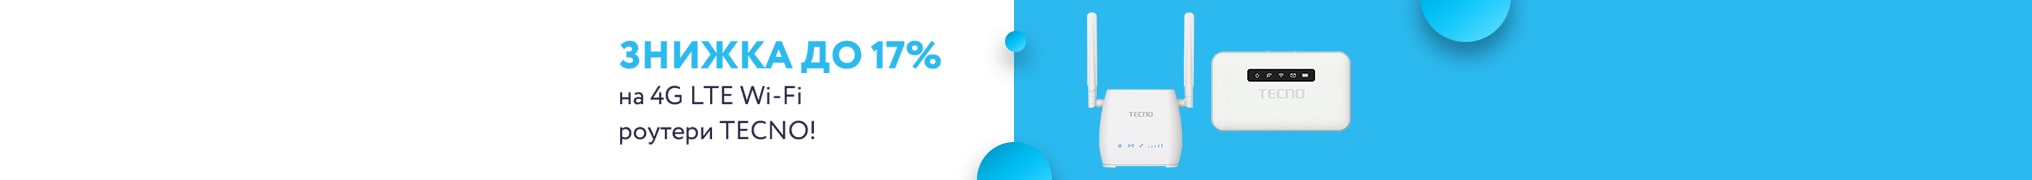 Знижка до 17% на 4G LTE Wi-Fi роутери TECNO!